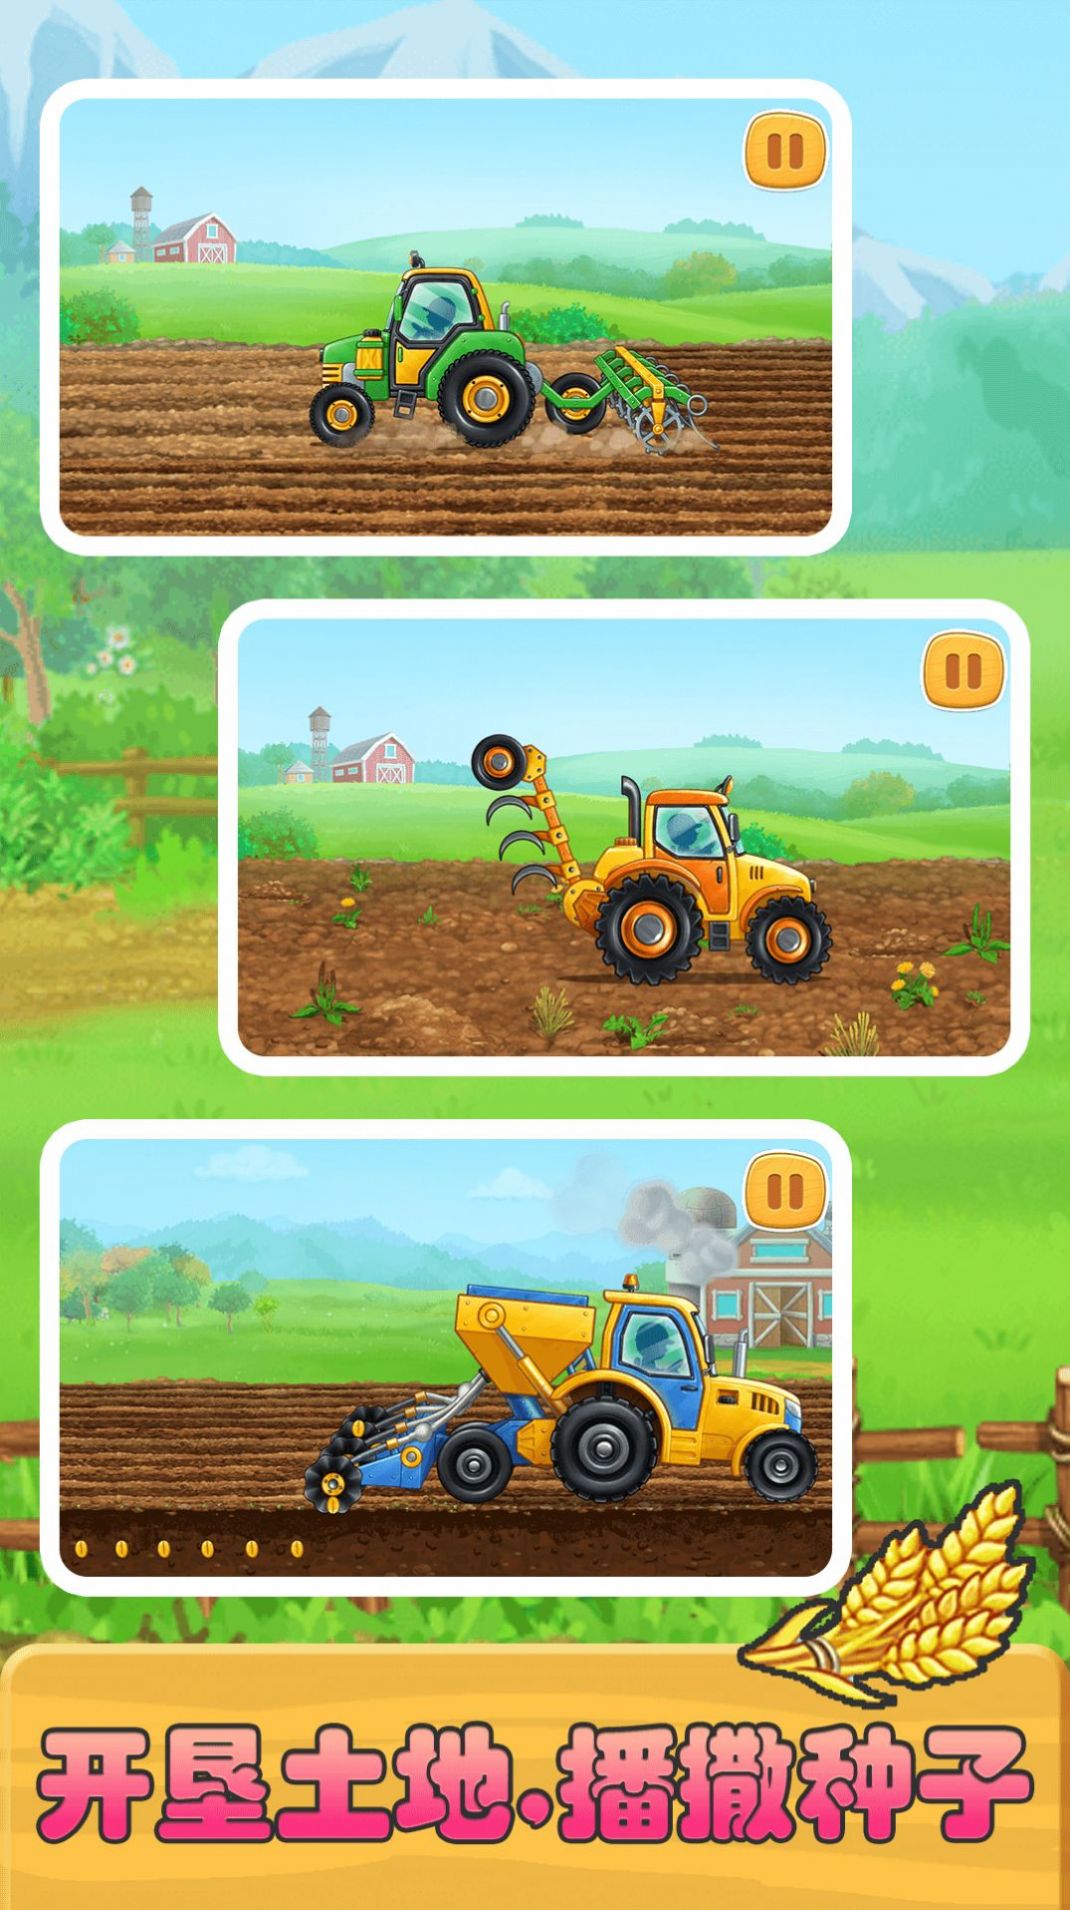 儿童建农场小镇游戏最新版下载 v1.0.5截图